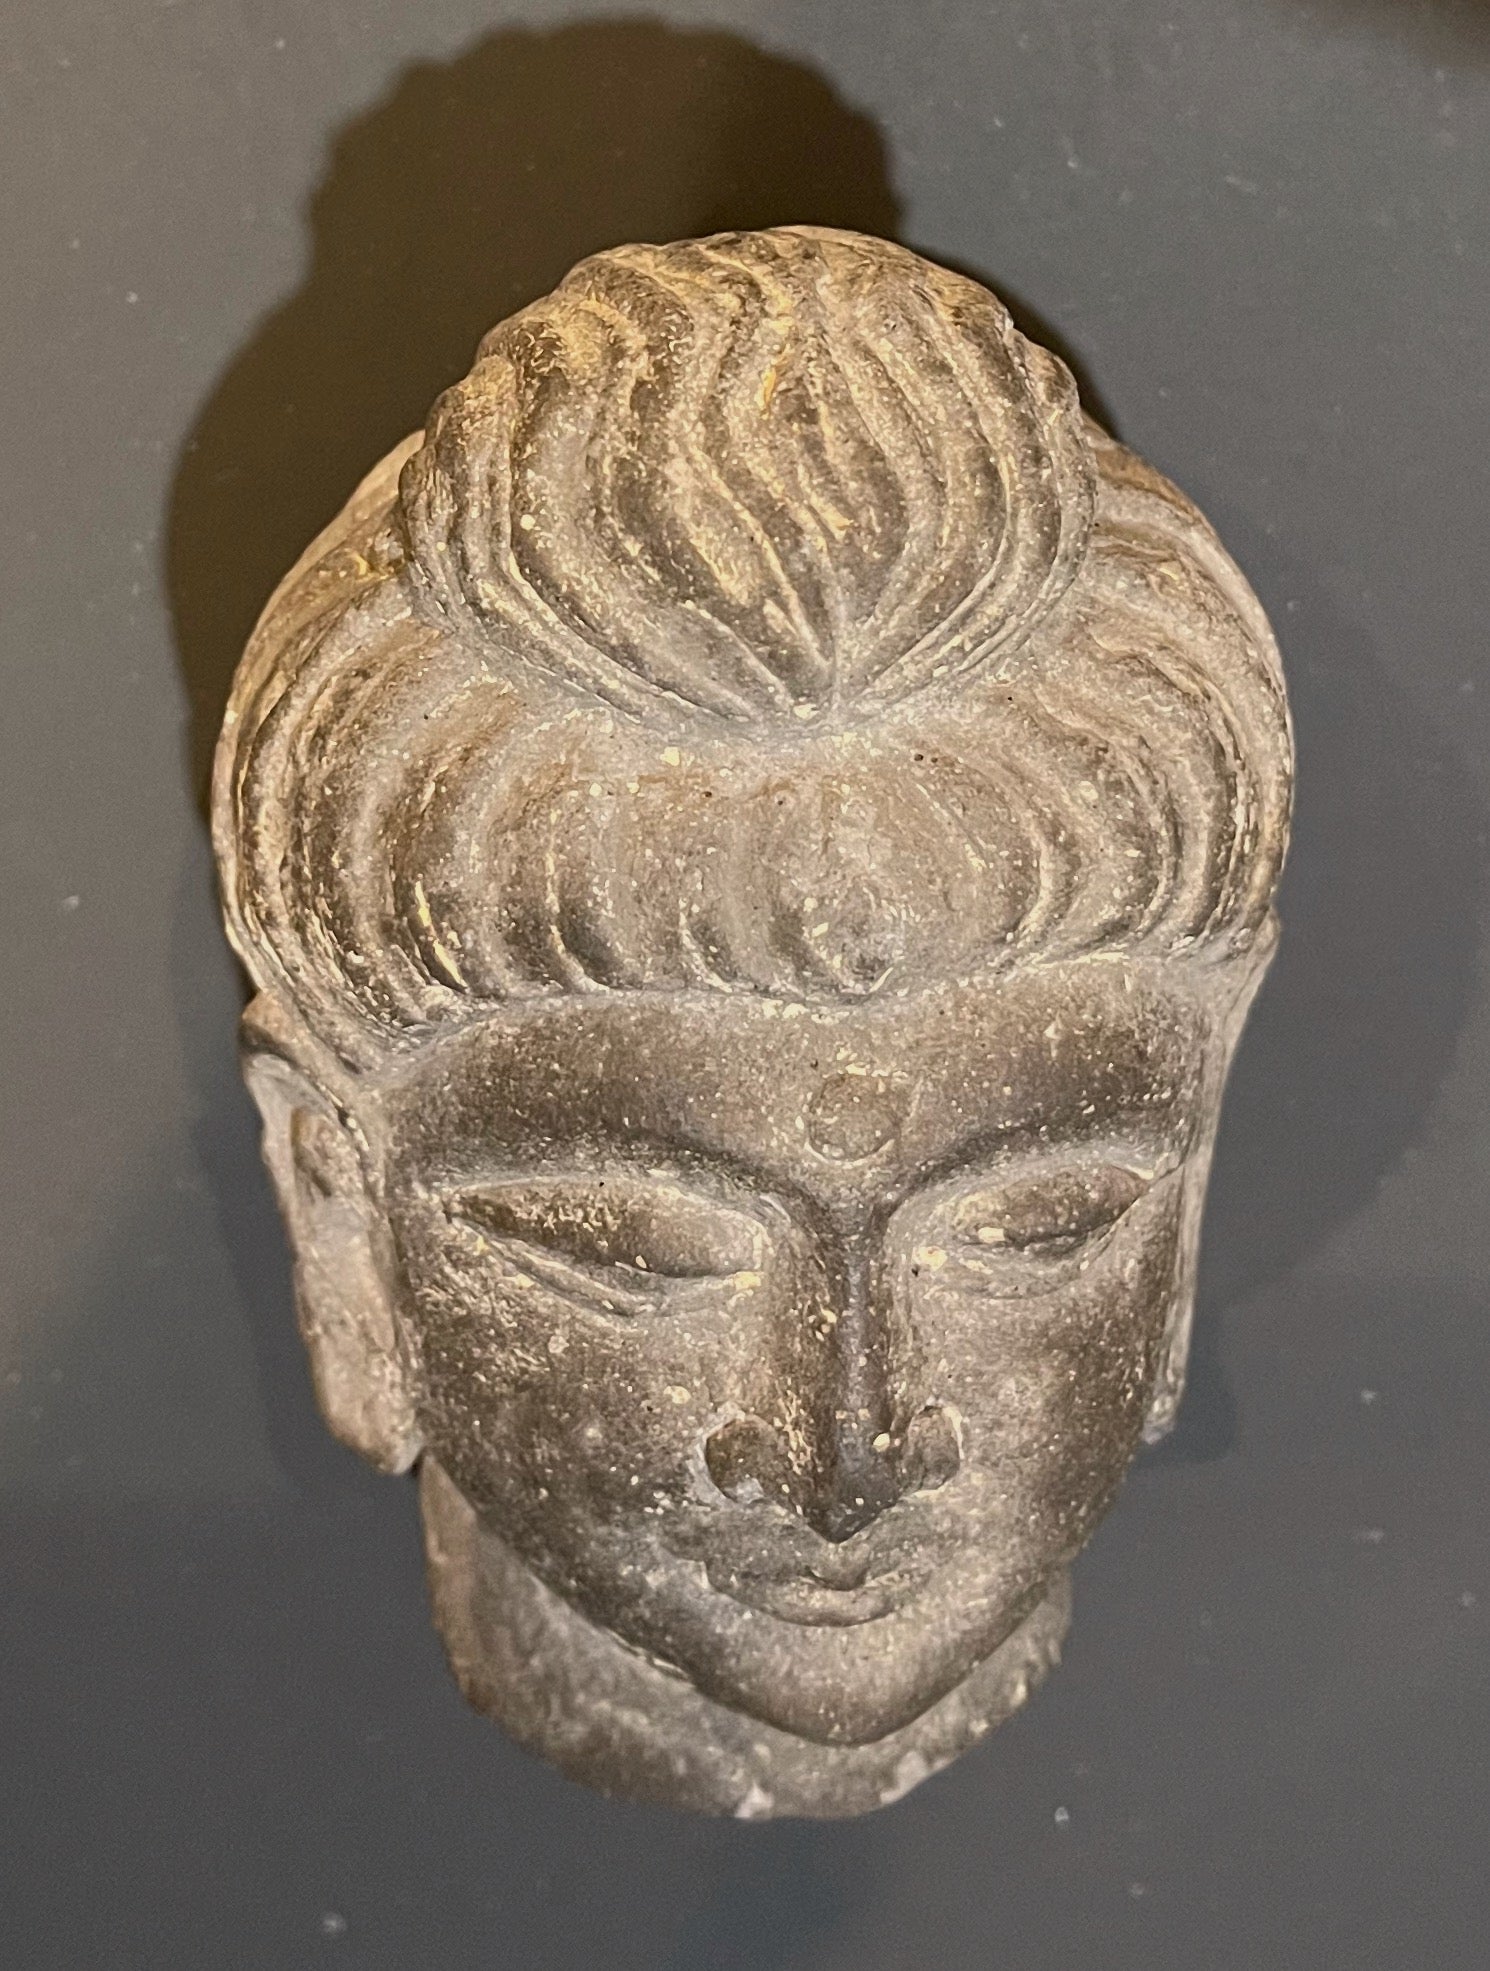 Gandharan Buddha Head - 3rd Century - DharBazaar